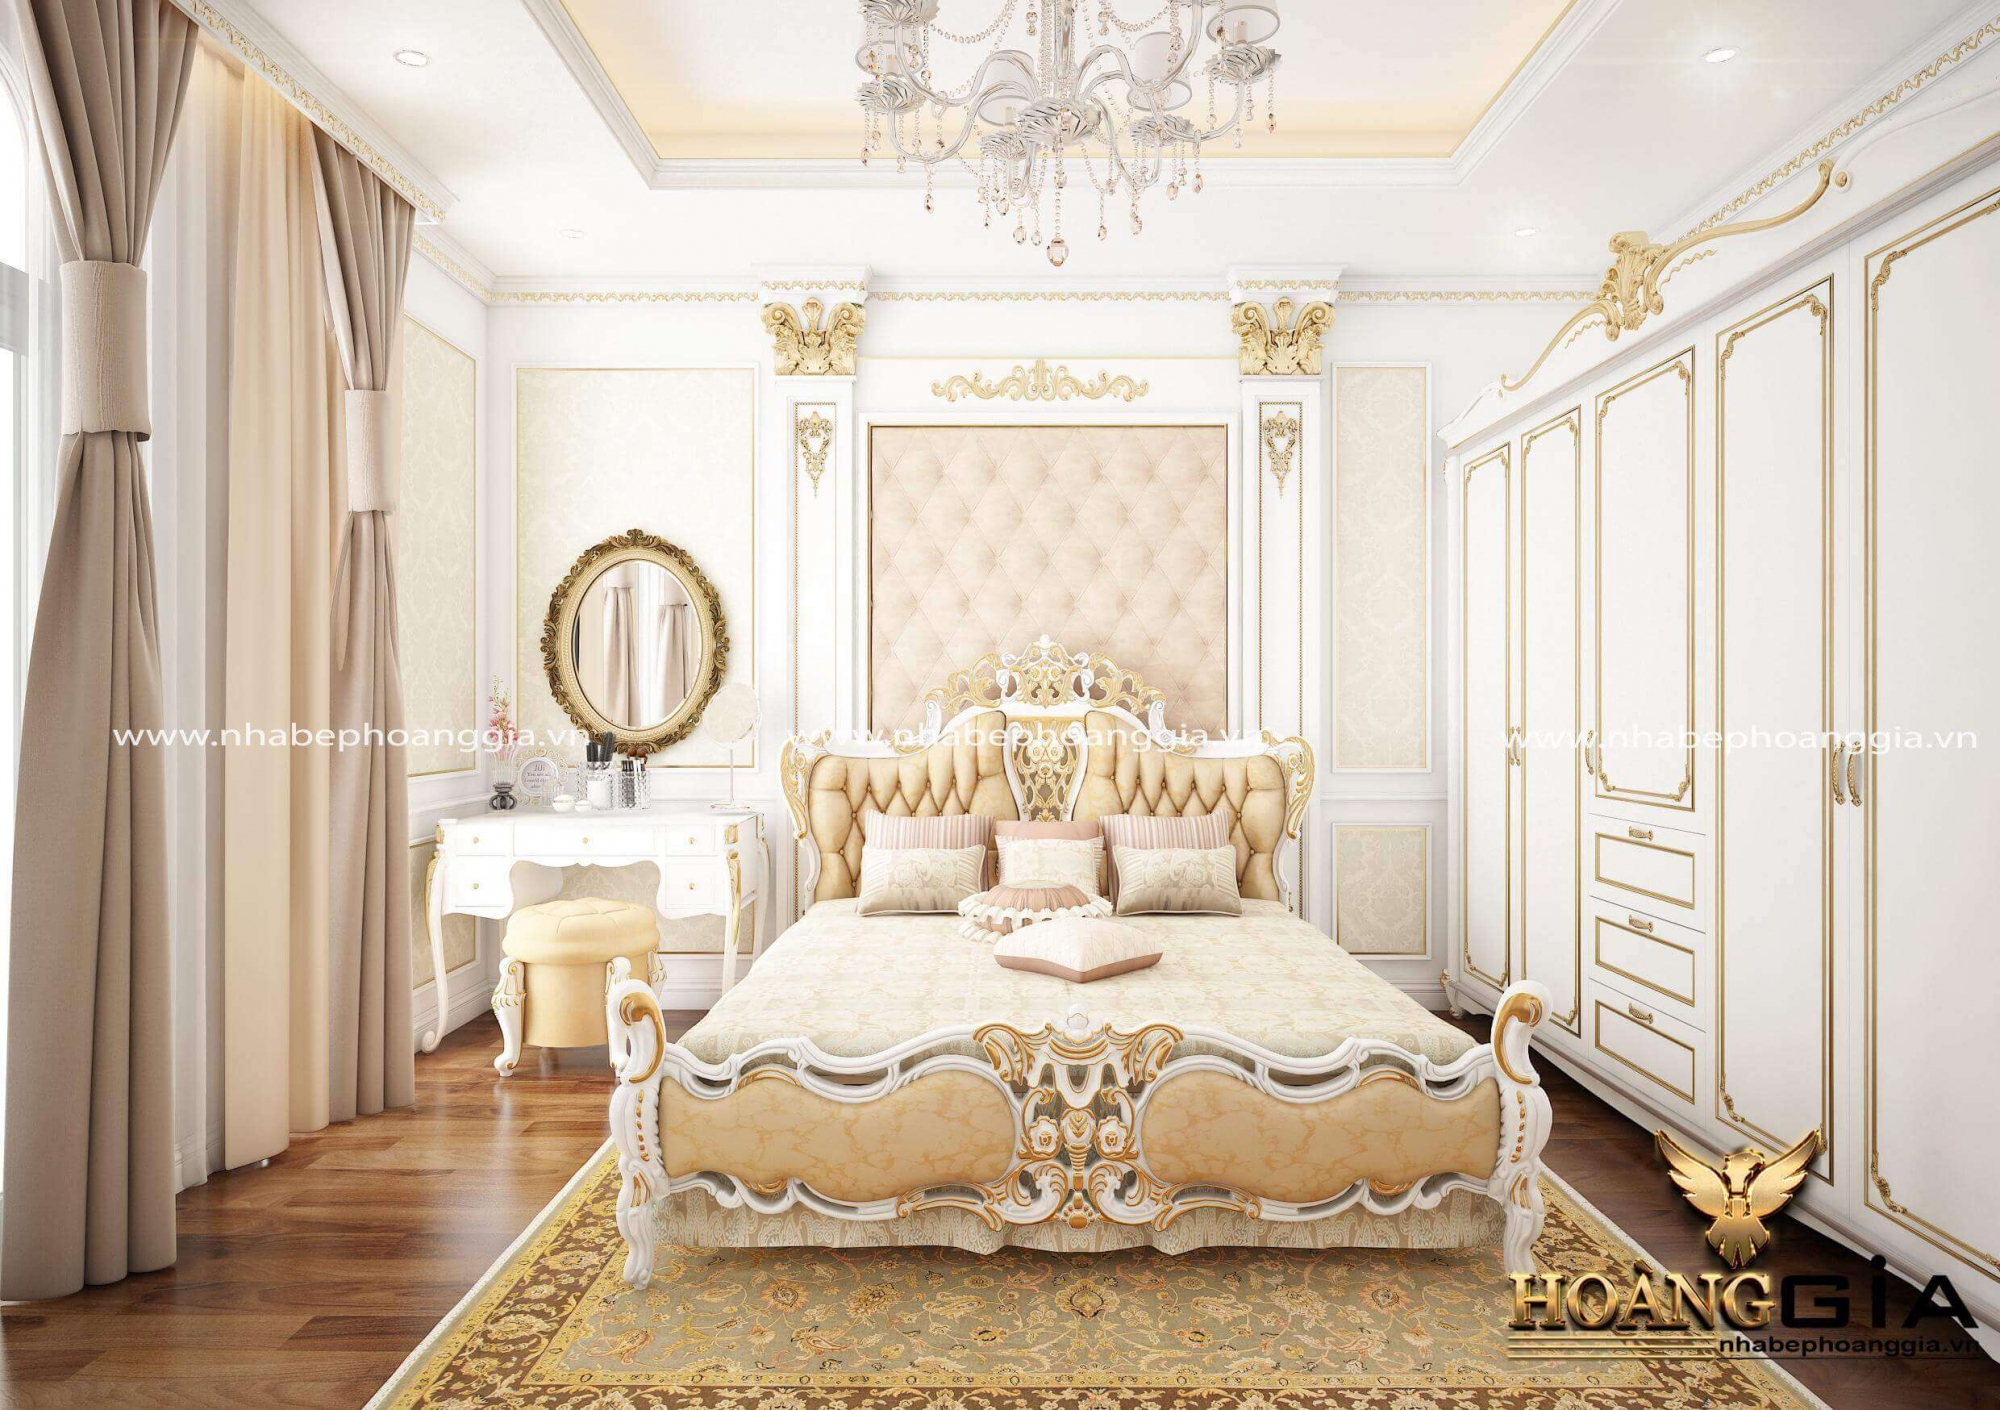 Lưu ý khi thiết kế nội thất phòng ngủ theo phong cách tân cổ điển